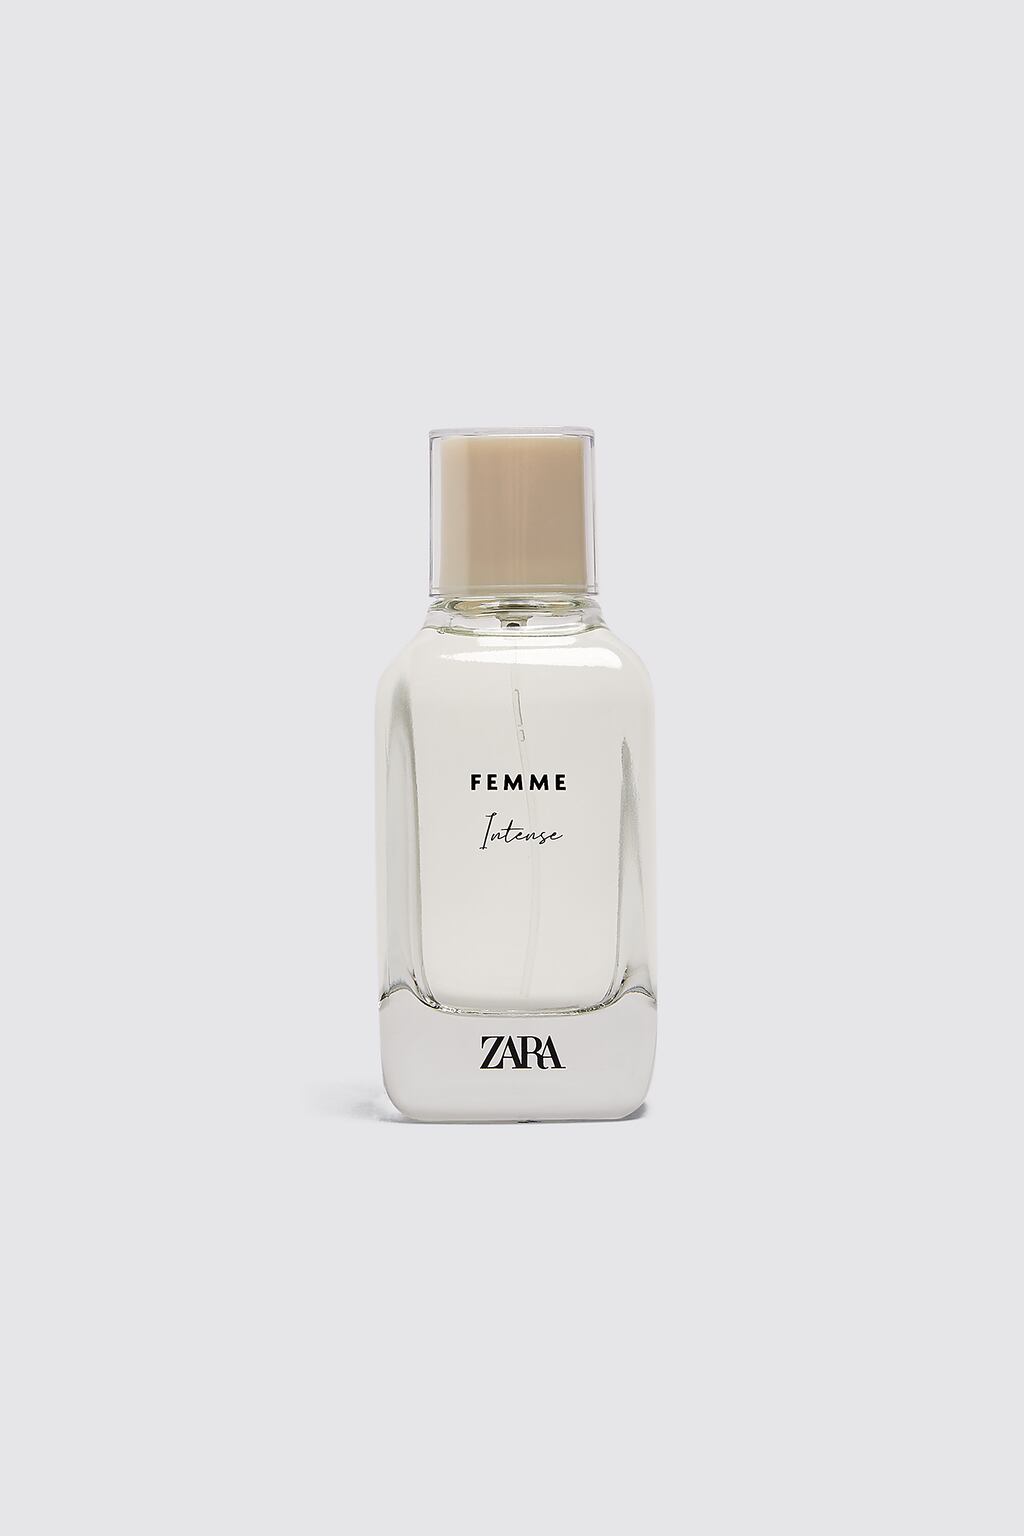 Femme Intense Zara аромат — новый 